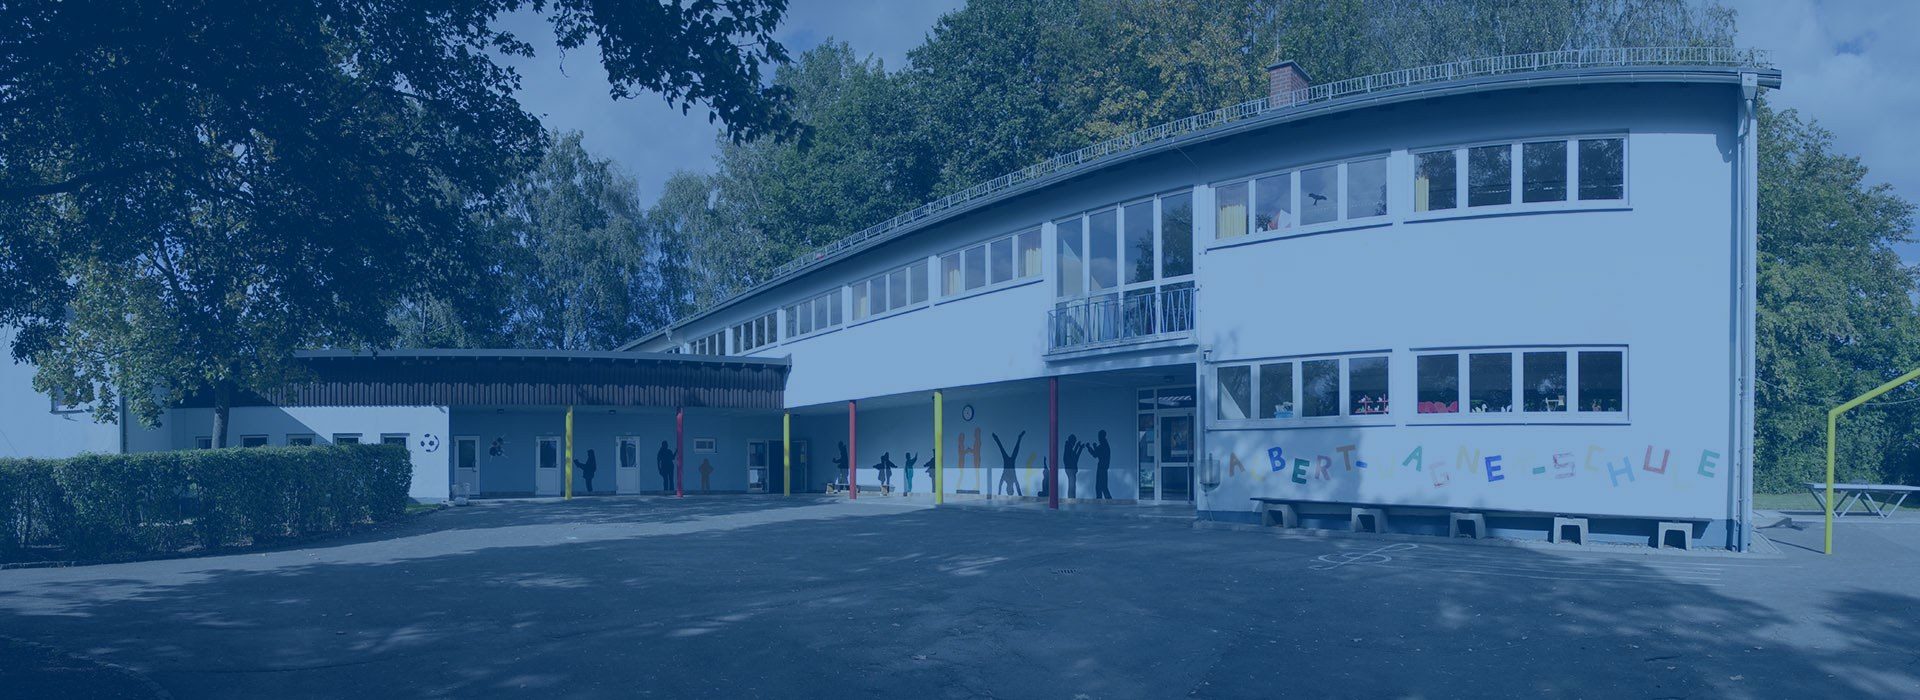 Albert Wagner Schule Panorama1 Blau